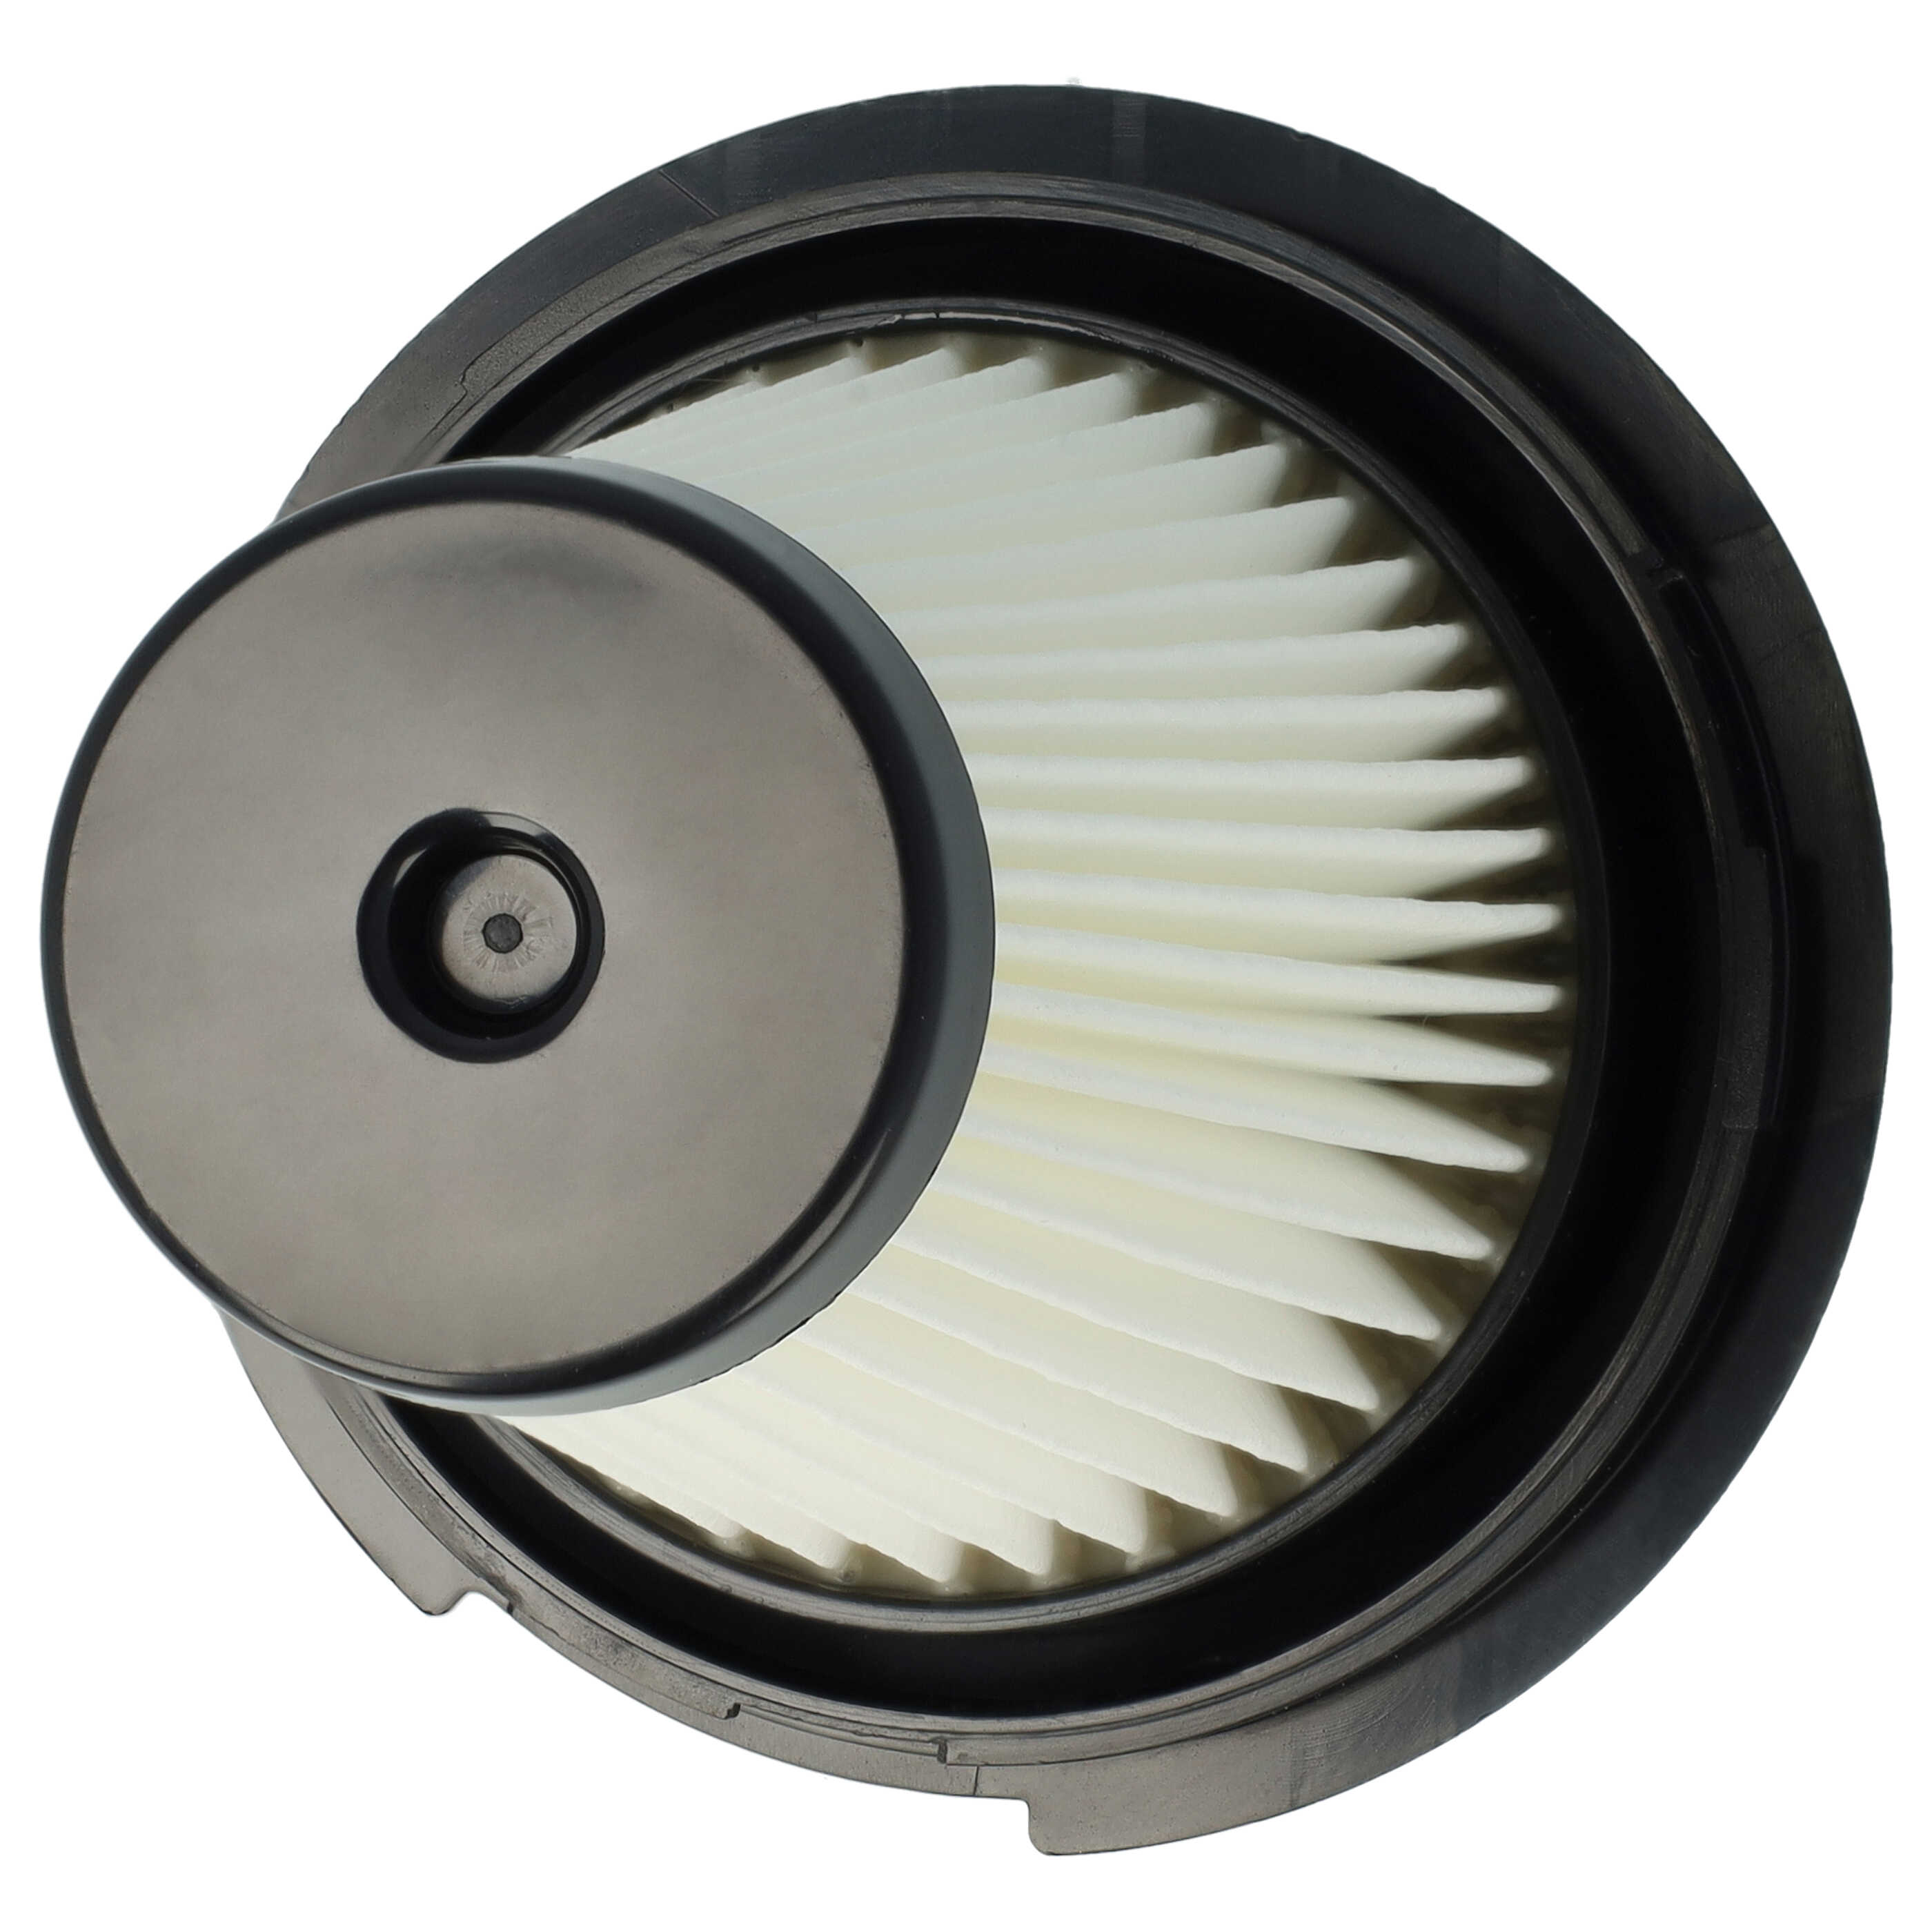 Filtre remplace Black & Decker SVF11, 1004708-73 pour aspirateur - filtre plissé H11